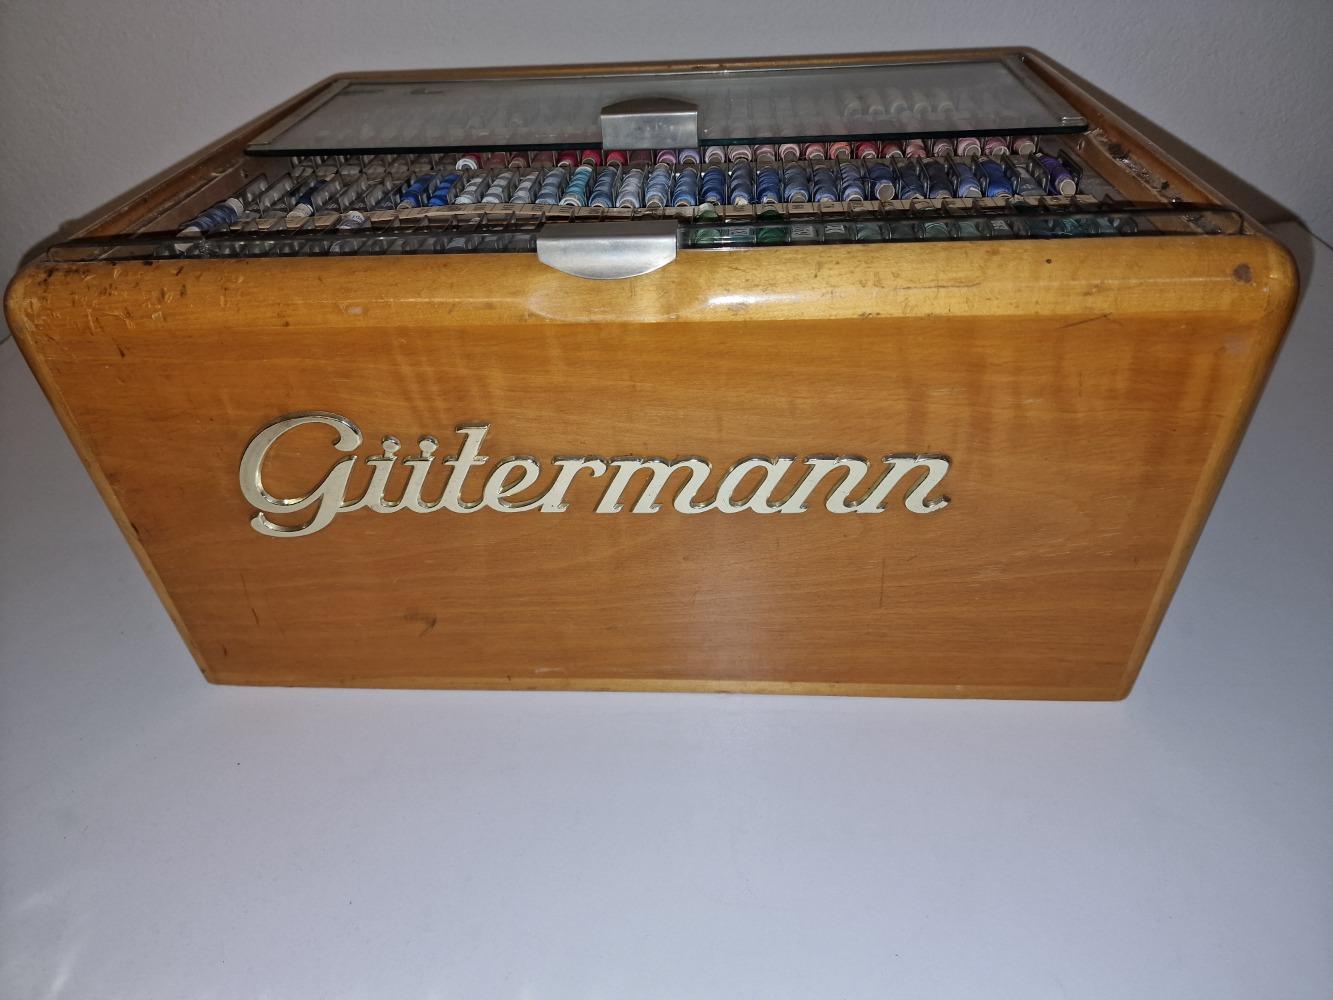 Gutermann haberdashery chest